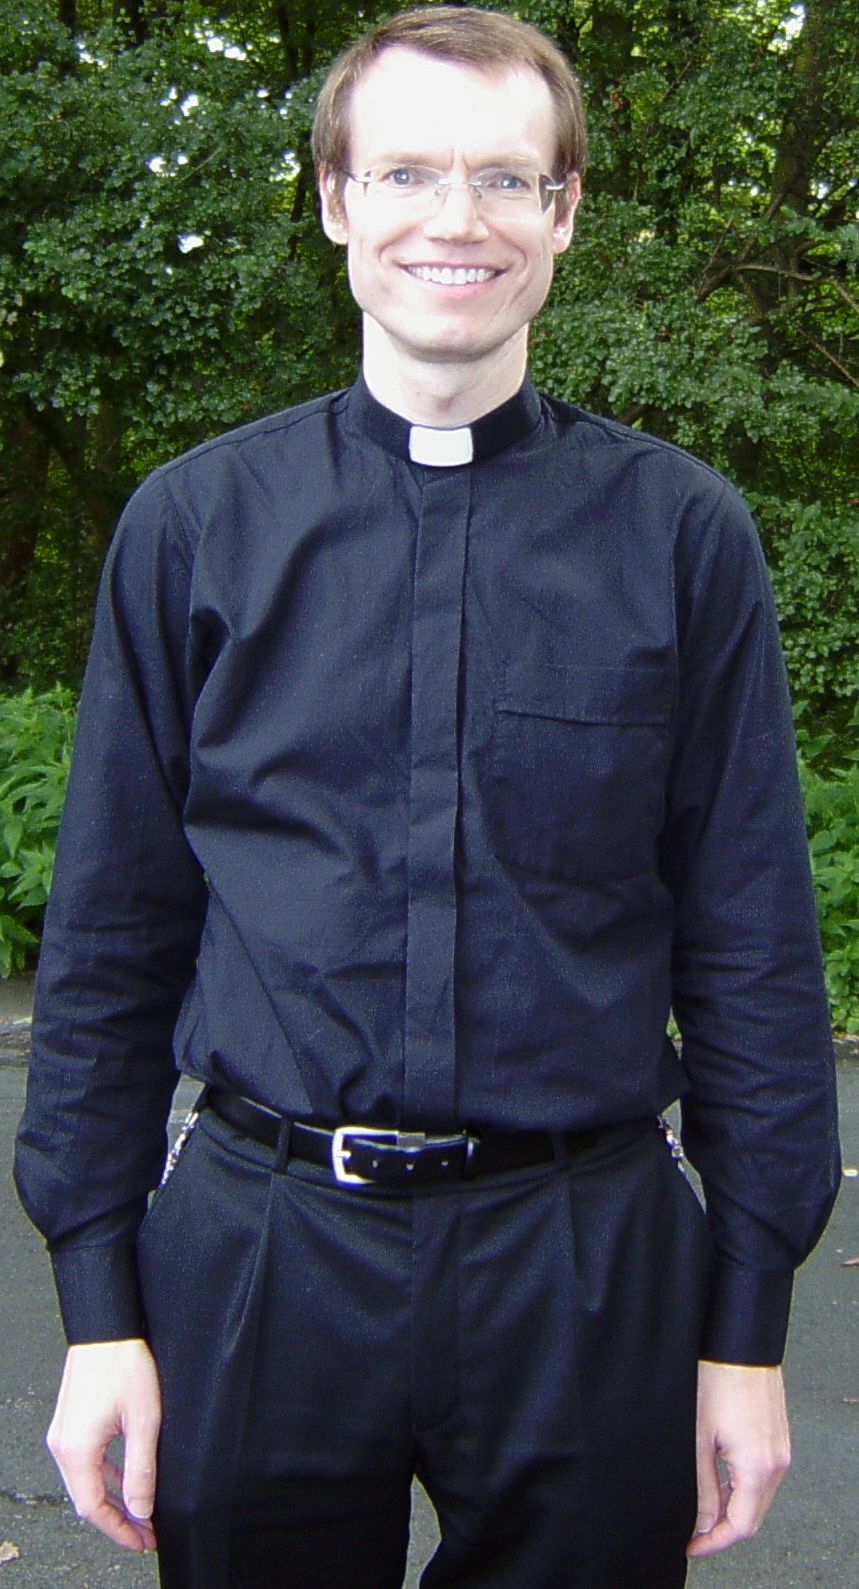 Foto Pater Rolf Lingen, 19.08.2008, 41 Jahre, 190cm, 89 kg,
      Bauch 92cm